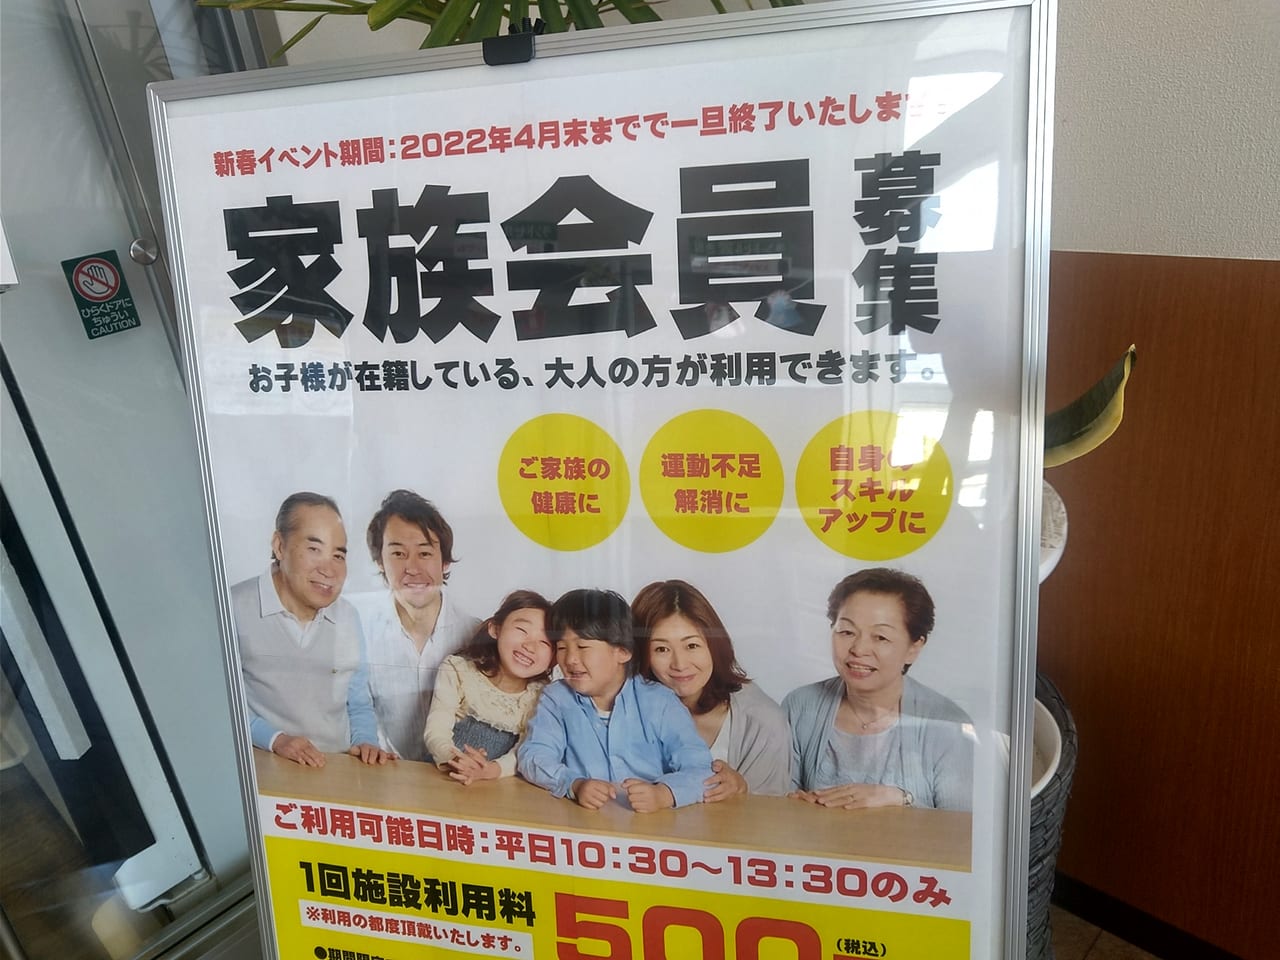 「東広島スイミングスクール」の「家族会員募集」キャンペーン